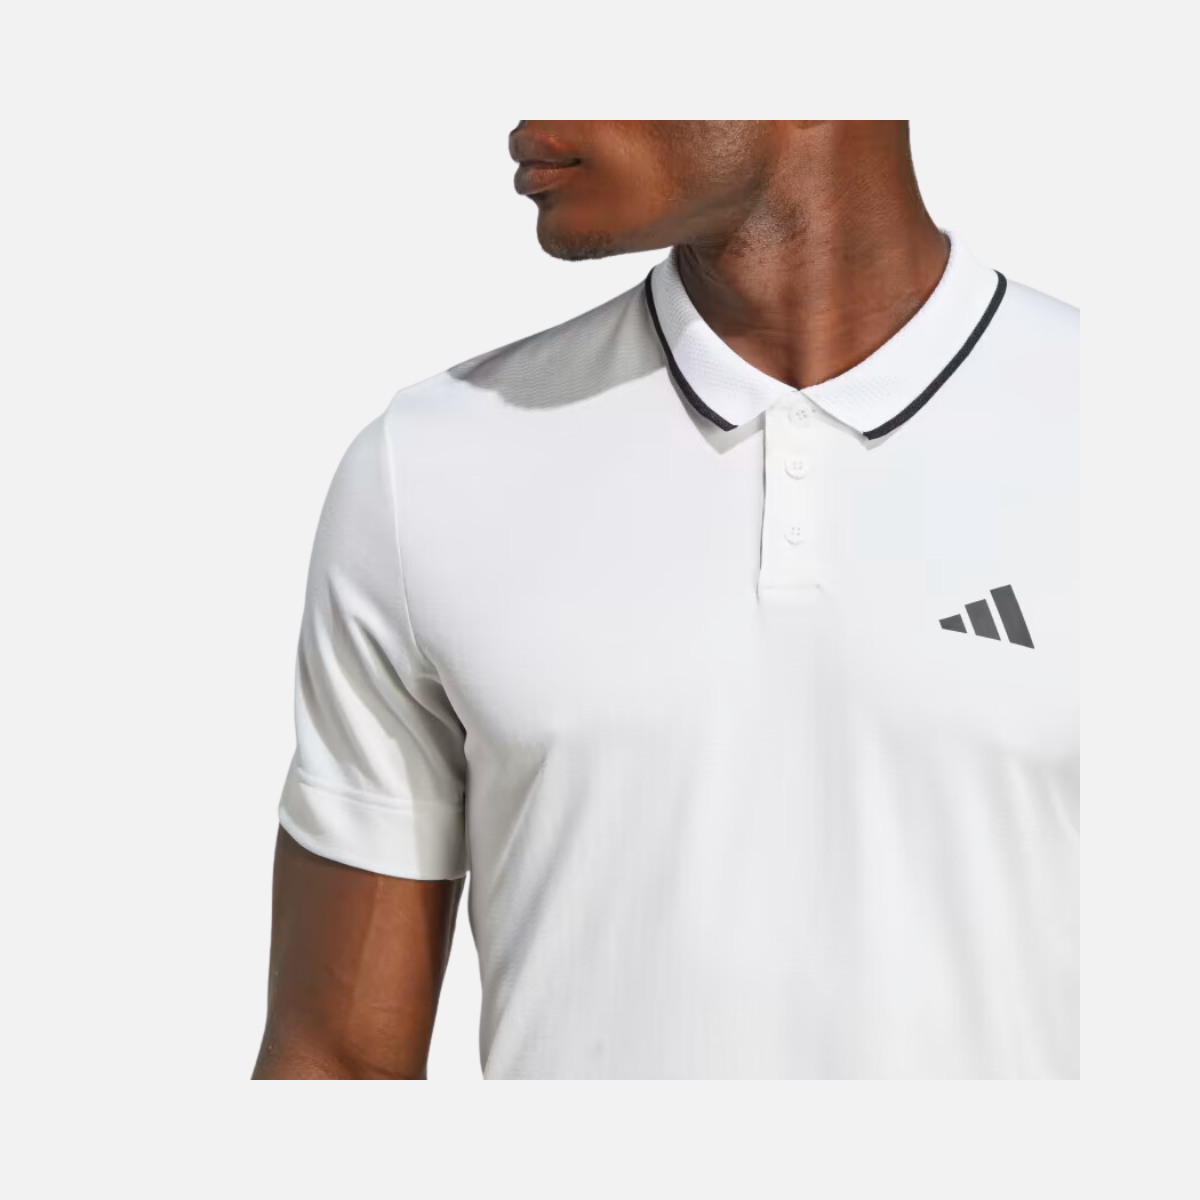 Adidas Freelift Men's Tennis Polo Shirt -White